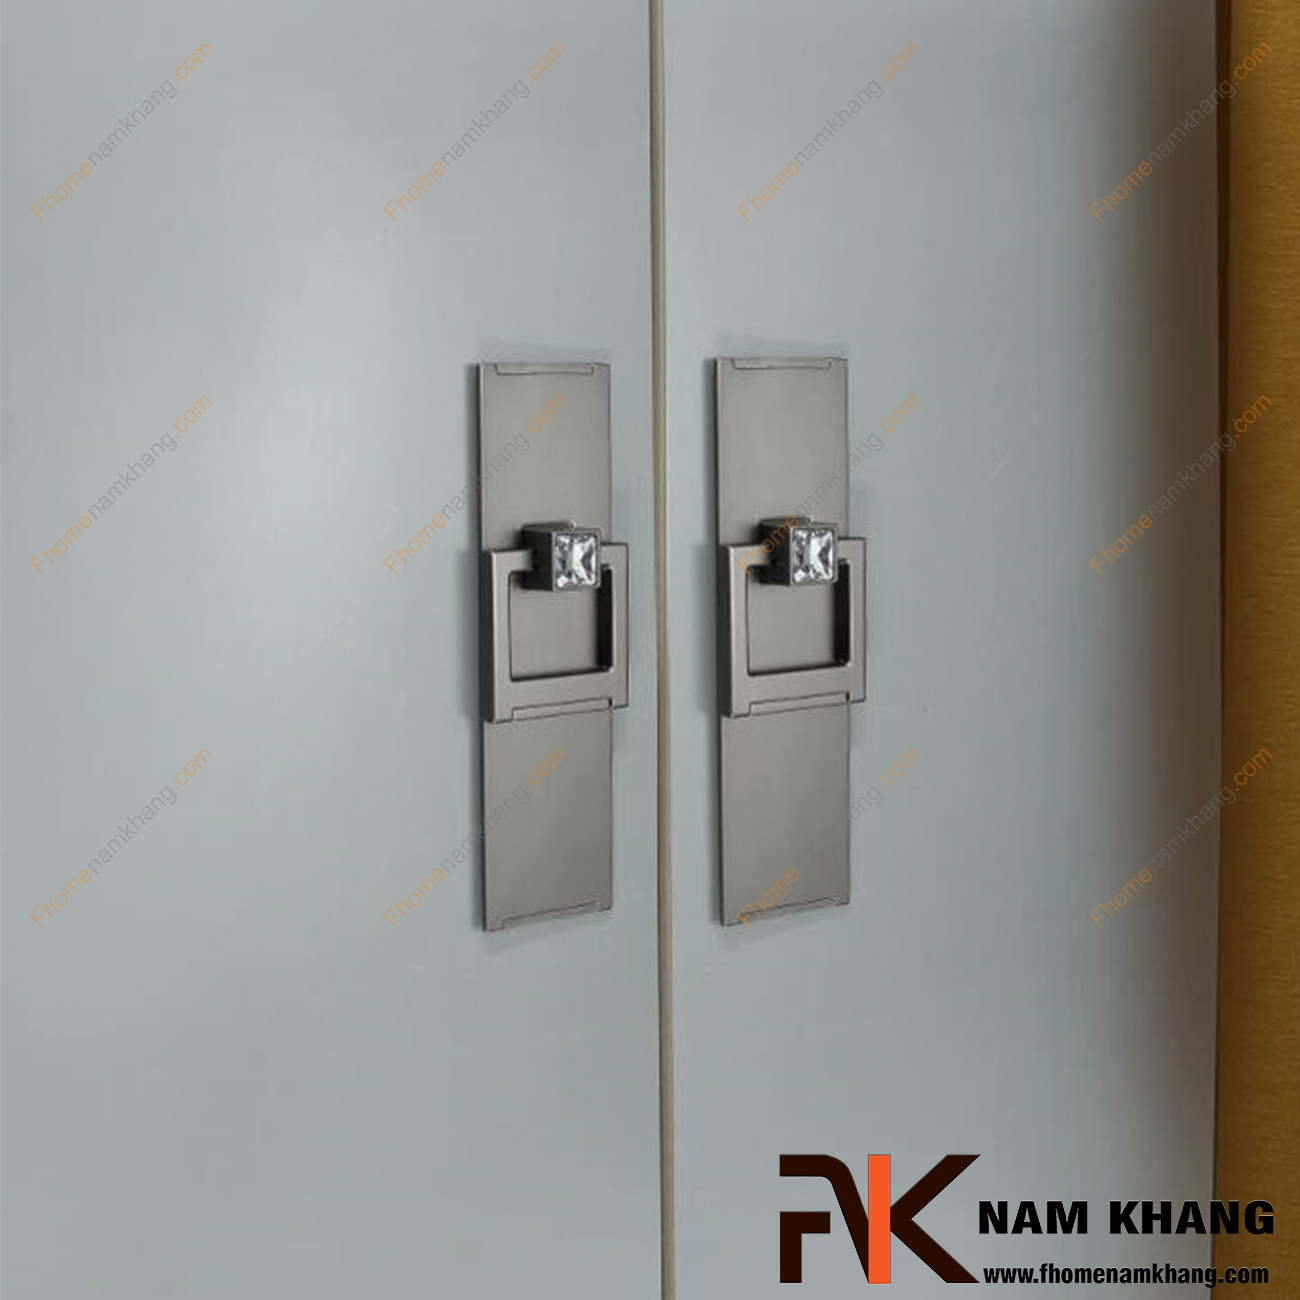 Núm cửa tủ kết hợp đá pha lê NK439-XVD tại FHomeNamKhang rất nhiều khuôn dạng với các dạng pha lê hình dáng đa dạng và cao cấp.